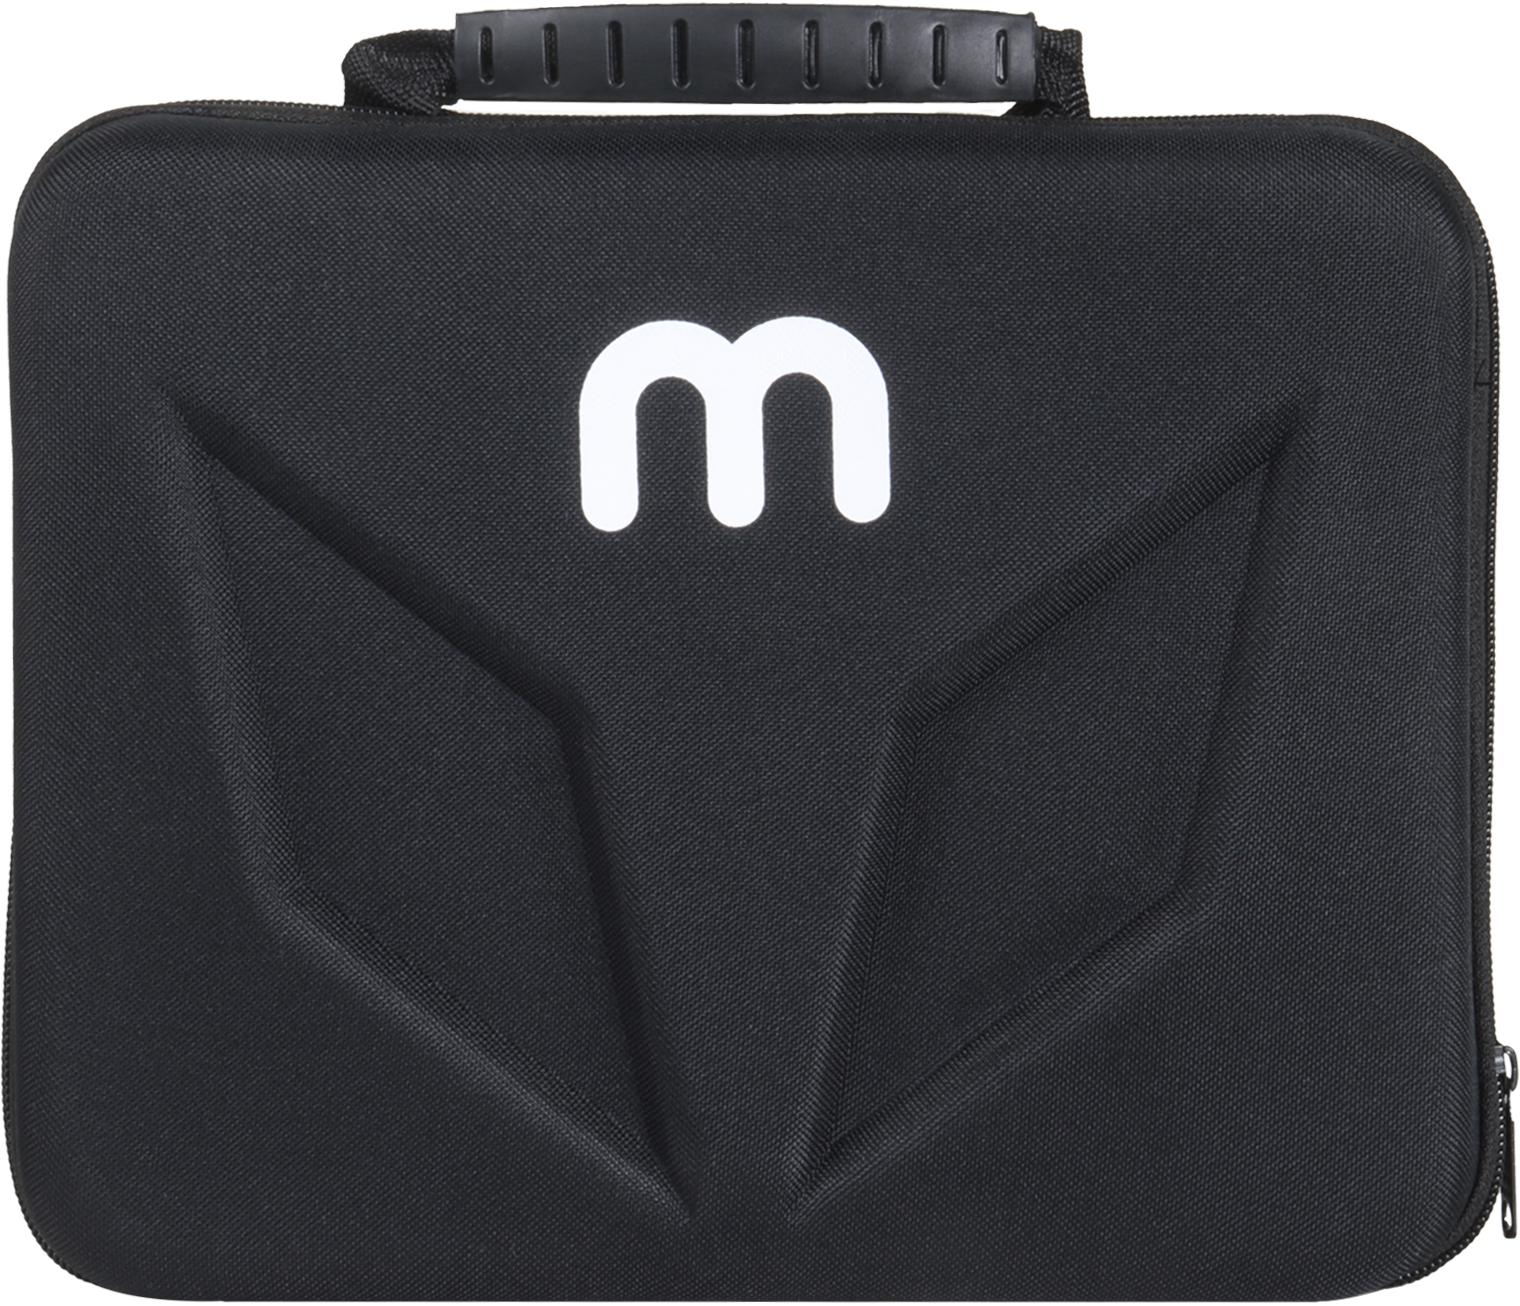 Bezprzewodowy pistolet do masażu MITON MT-02 - relaks, rozluźnienie i ulga dzięki jednemu, przenośnemu urządzeniu!